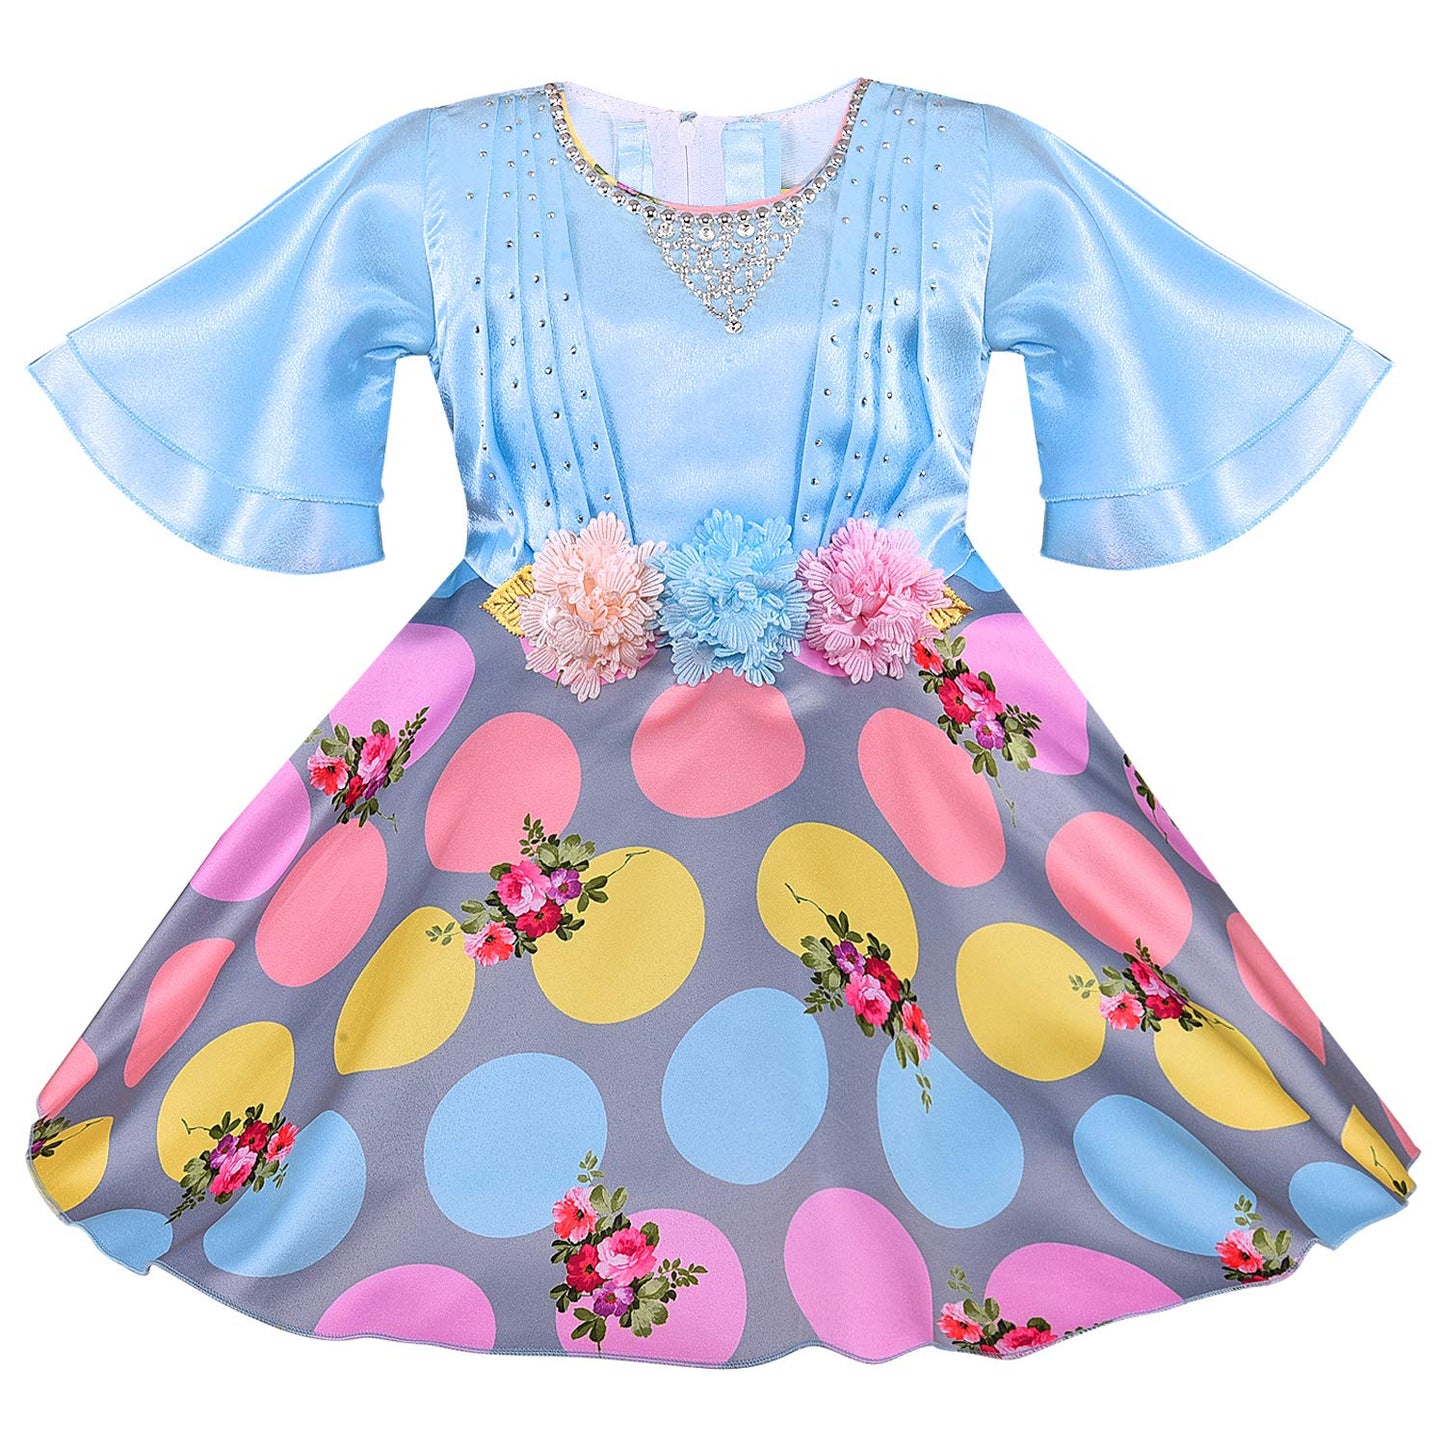 Wish Karo kids Birthday Frock Dress (stn765blu)